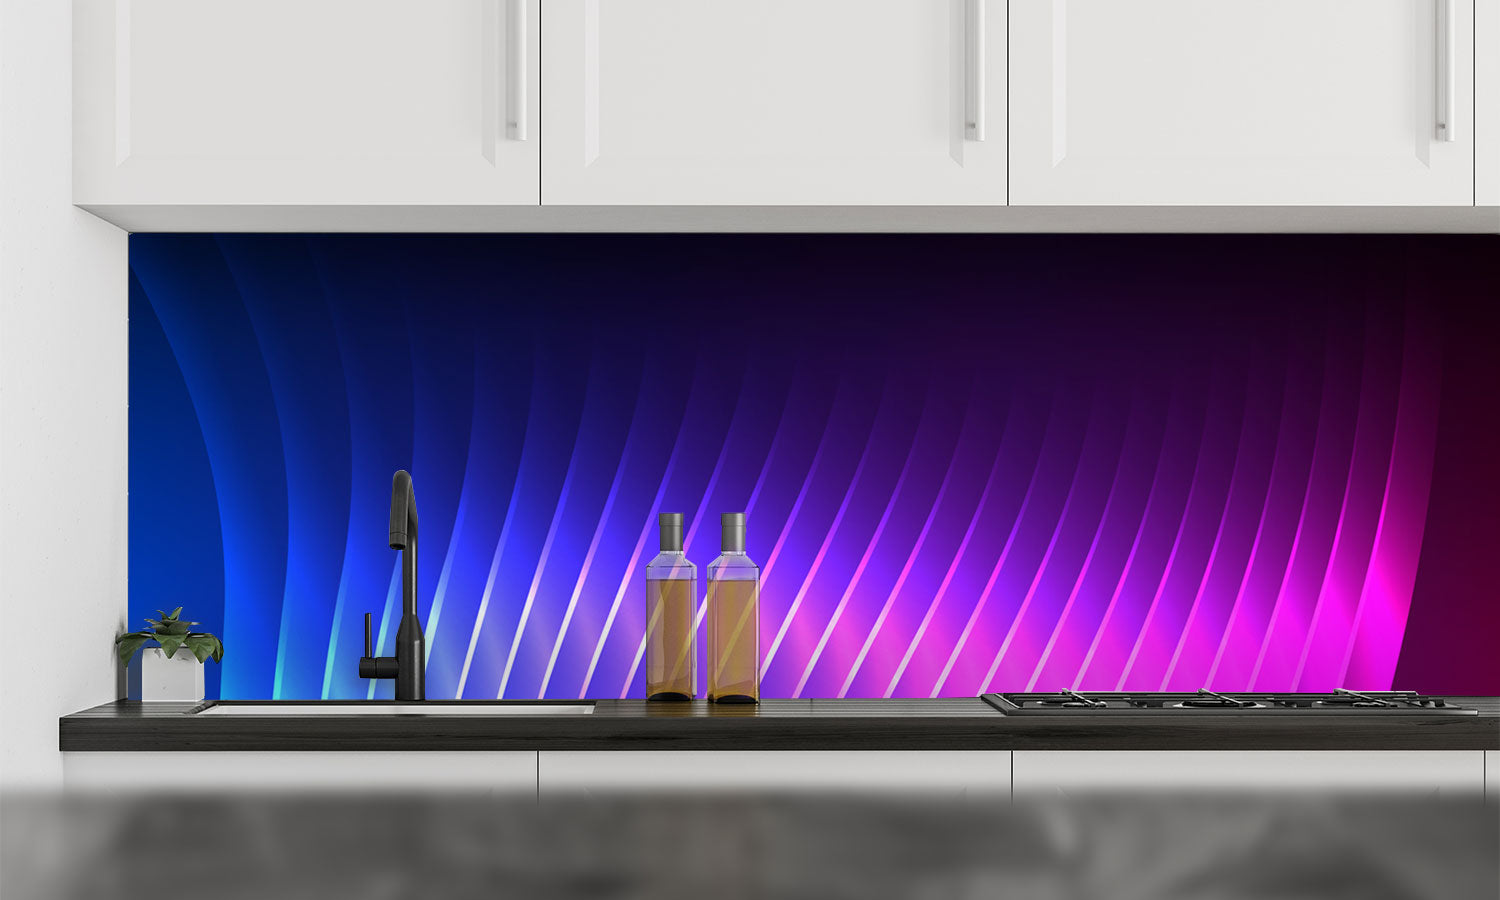 Kuhinjski paneli Blue Light purple - Stekleni / PVC plošče / Pleksi steklo - s tiskom za kuhinjo, Stenske obloge PKU0272 - Life-decor.si